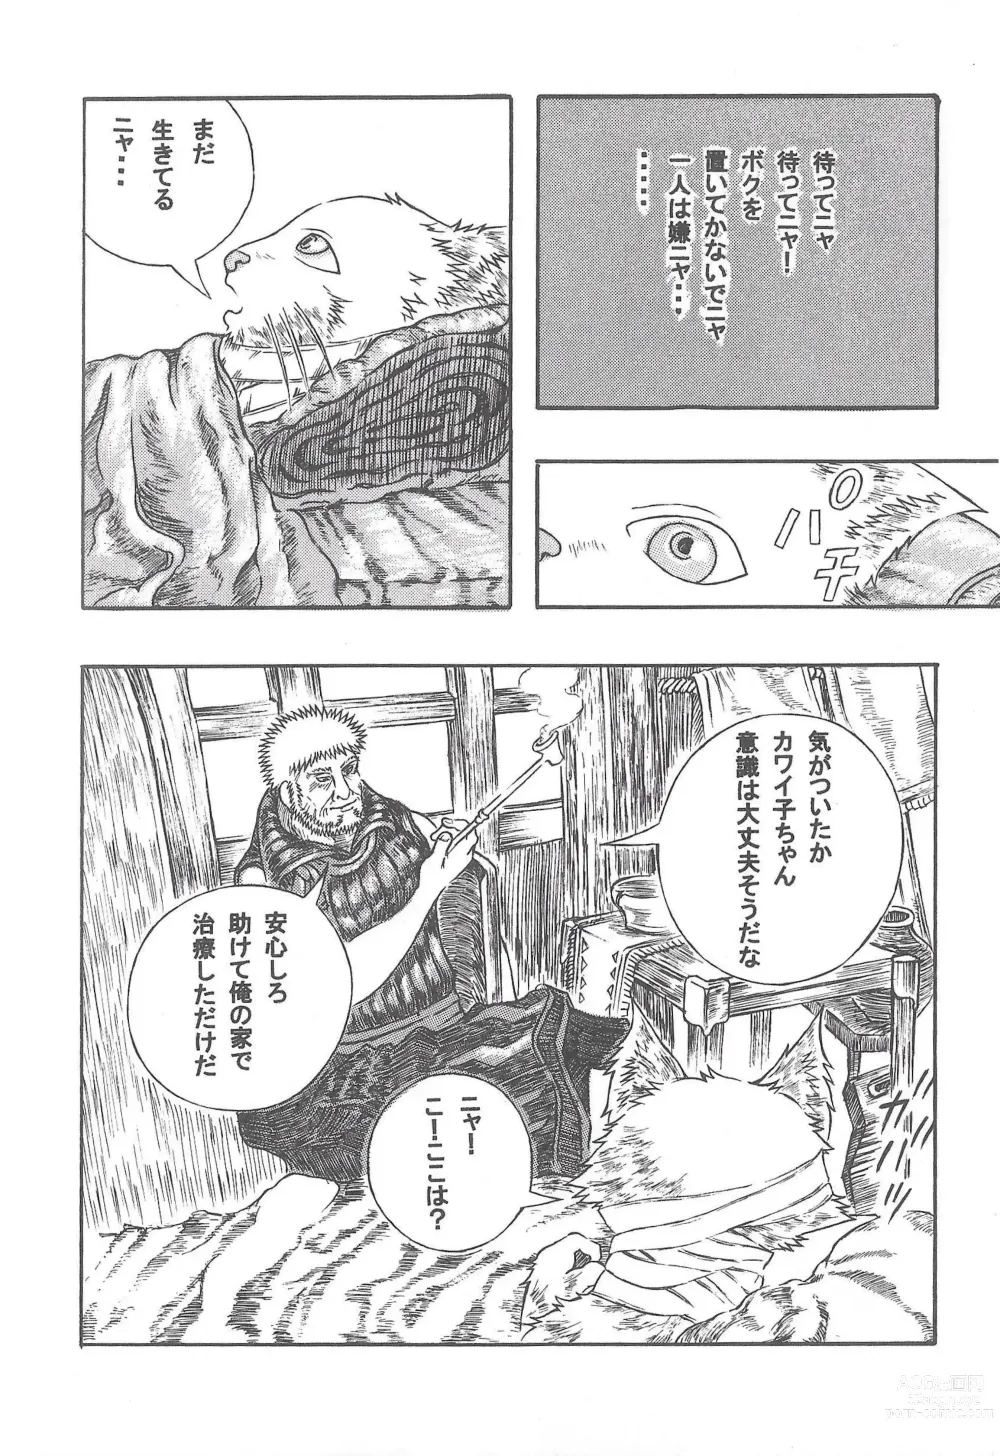 Page 7 of doujinshi Airu Monhun Dream